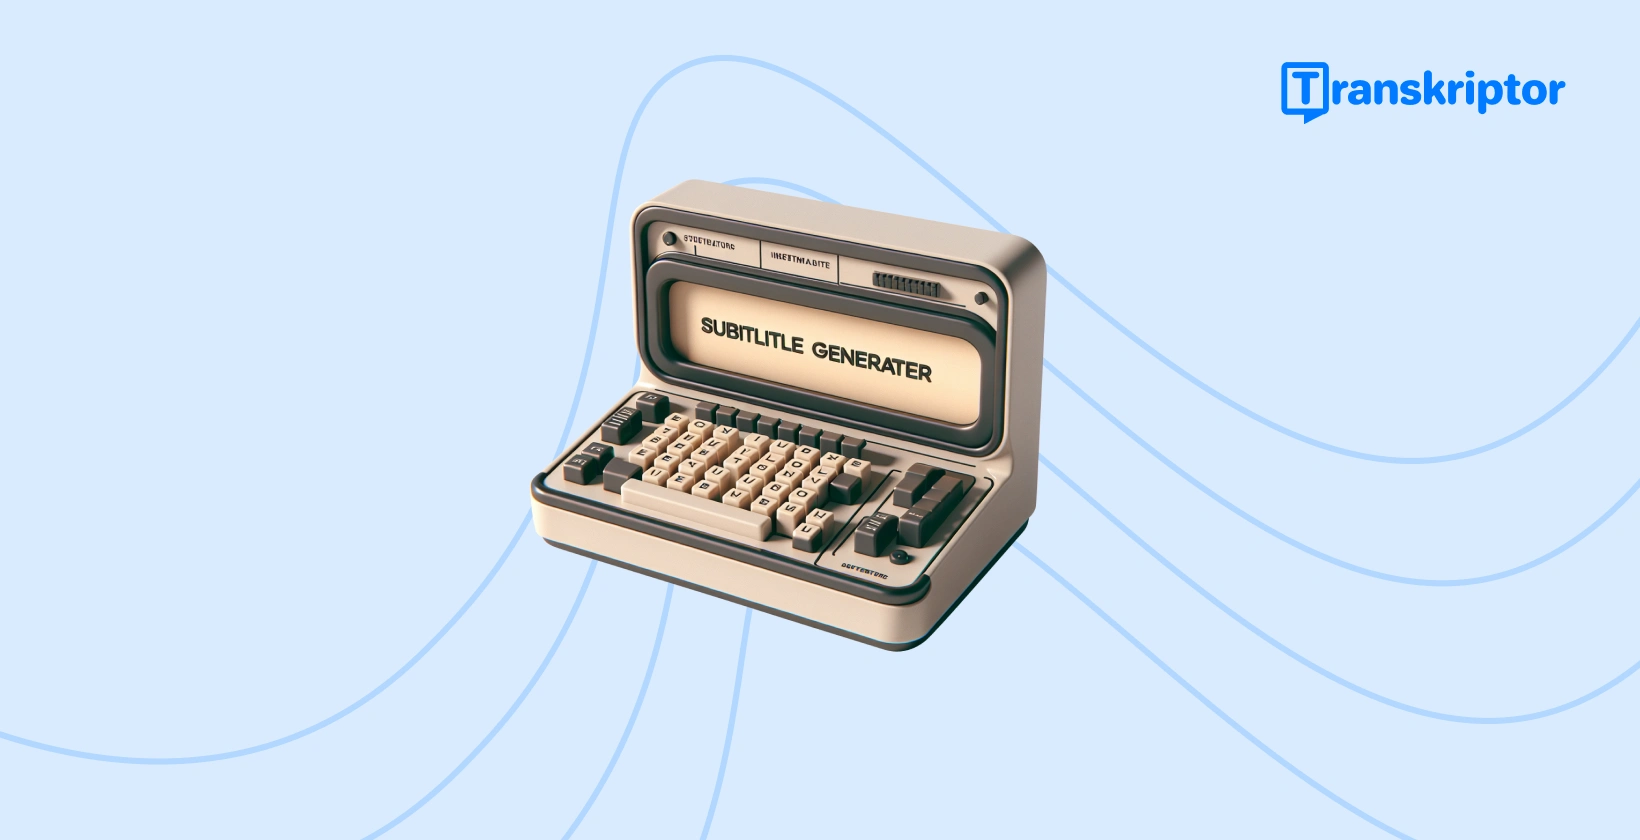 O mașină de scris generatoare de subtitrări vintage care simbolizează procesul de creare a subtitrărilor în iMovie, îmbunătățind accesibilitatea video.